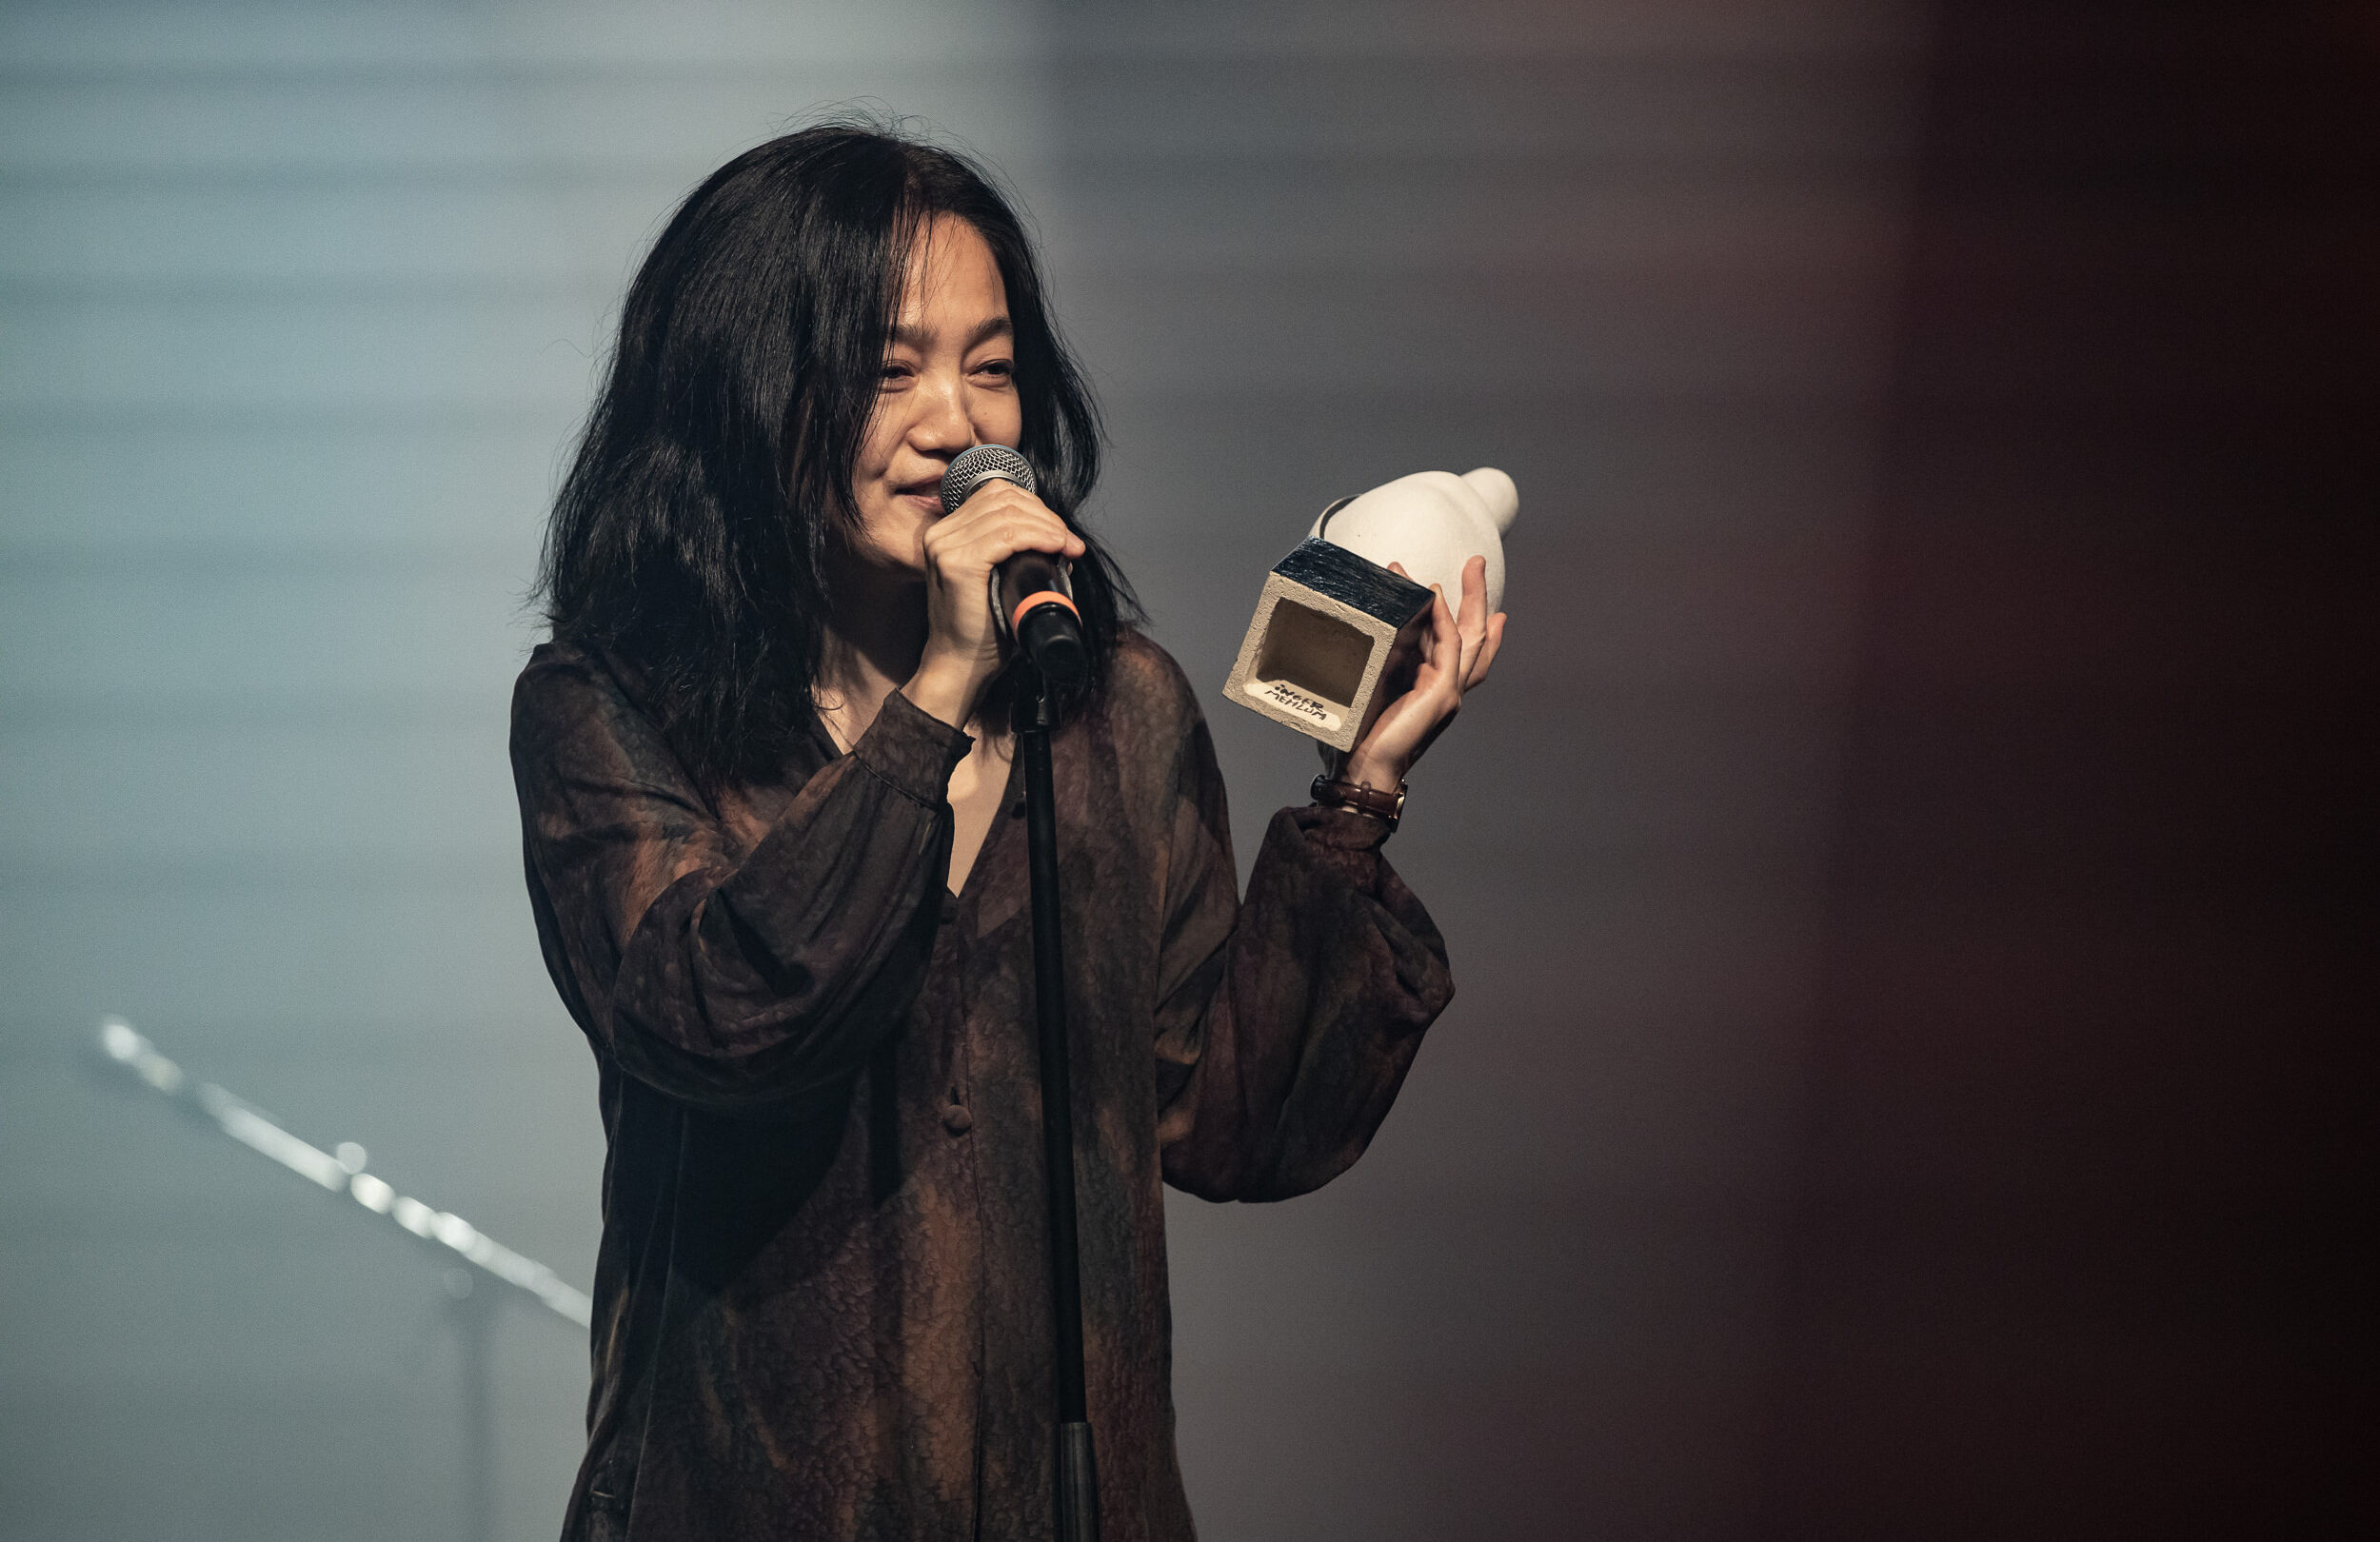 En kvinde, der holder en mikrofon på scenen, mens hun modtager årets hæderspriser for sin enestående præstation.